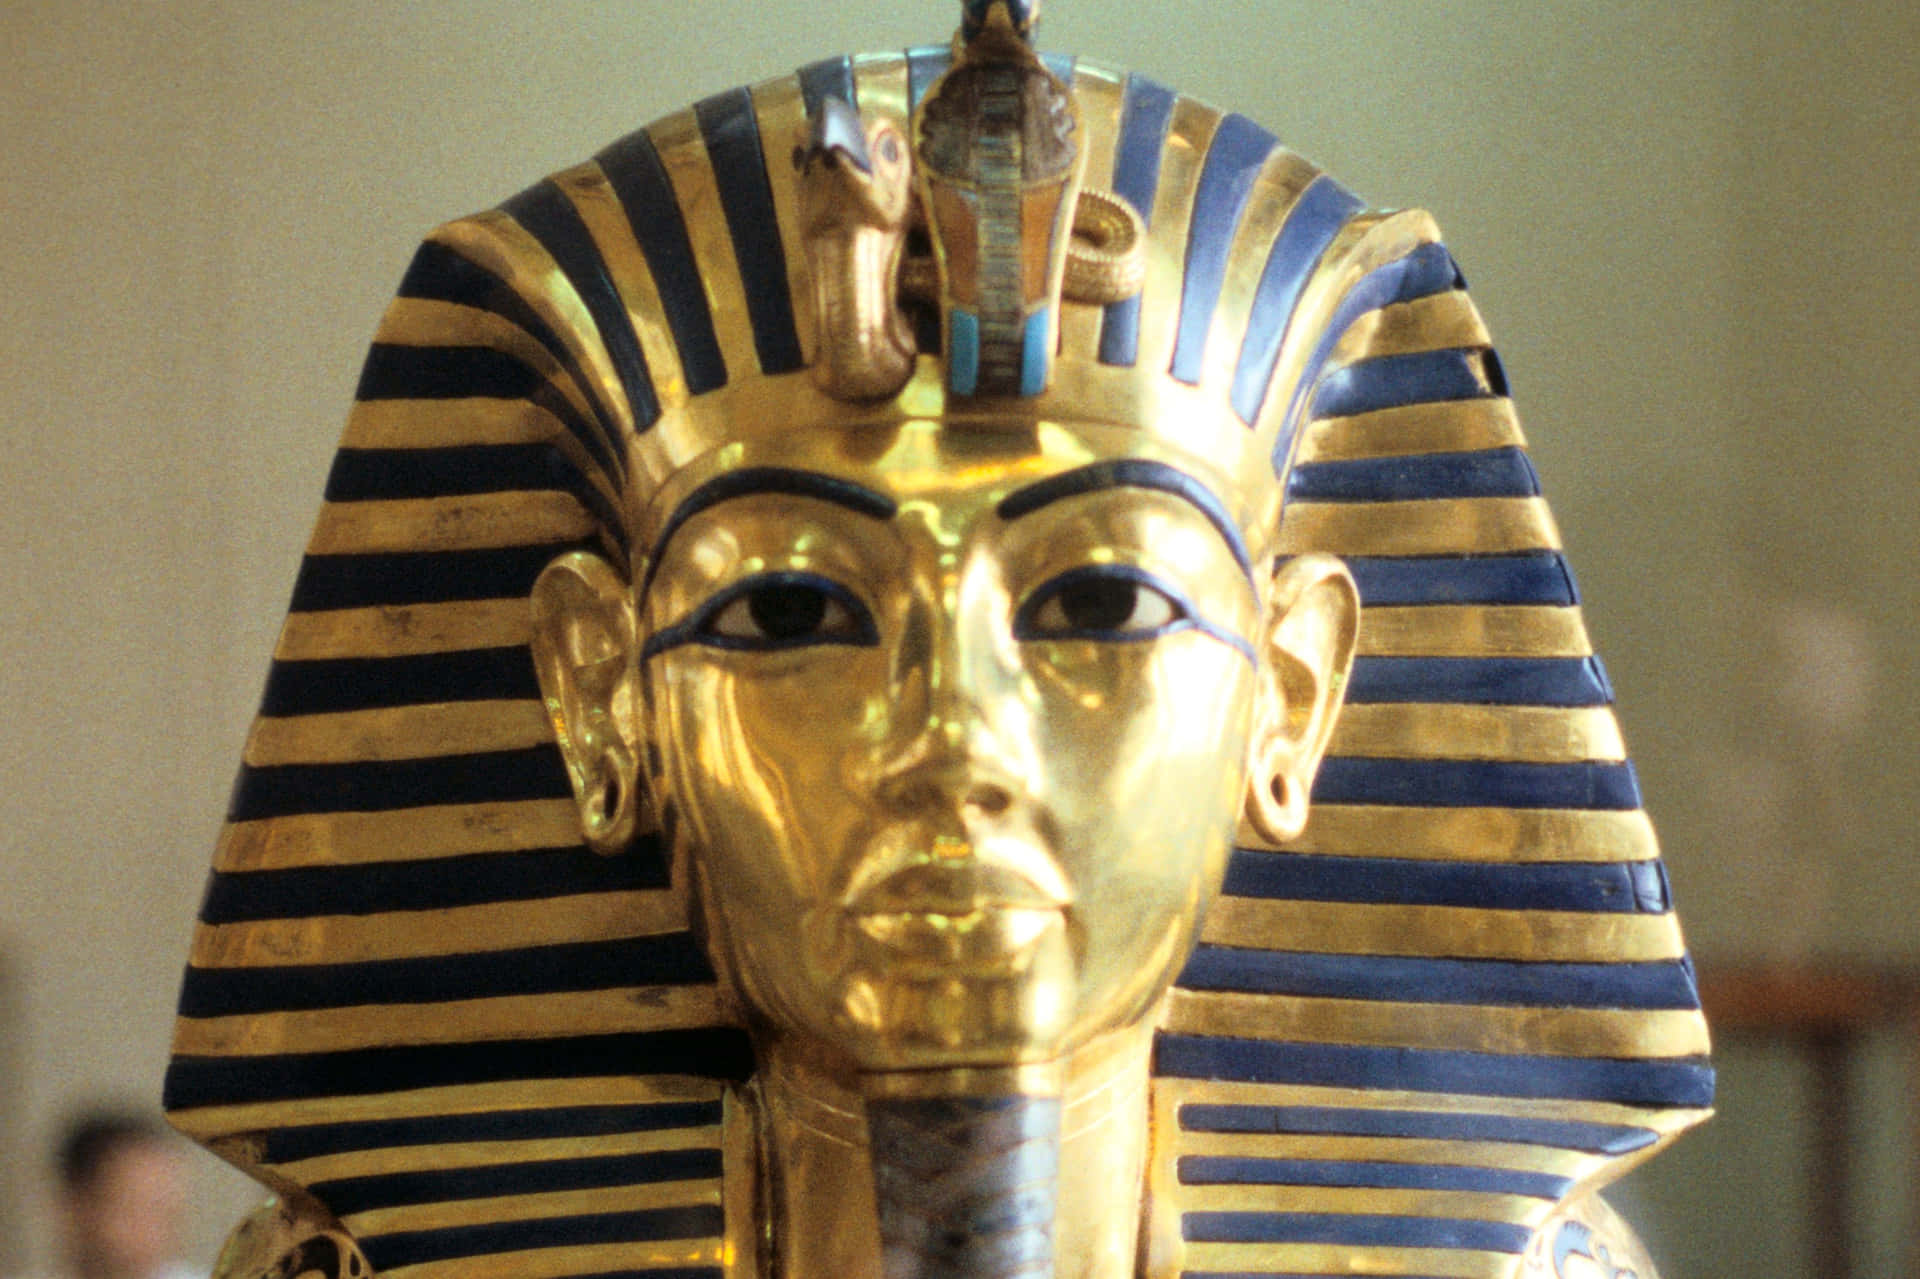 Ancient Egypt Civilization: A Glimpse into the Past